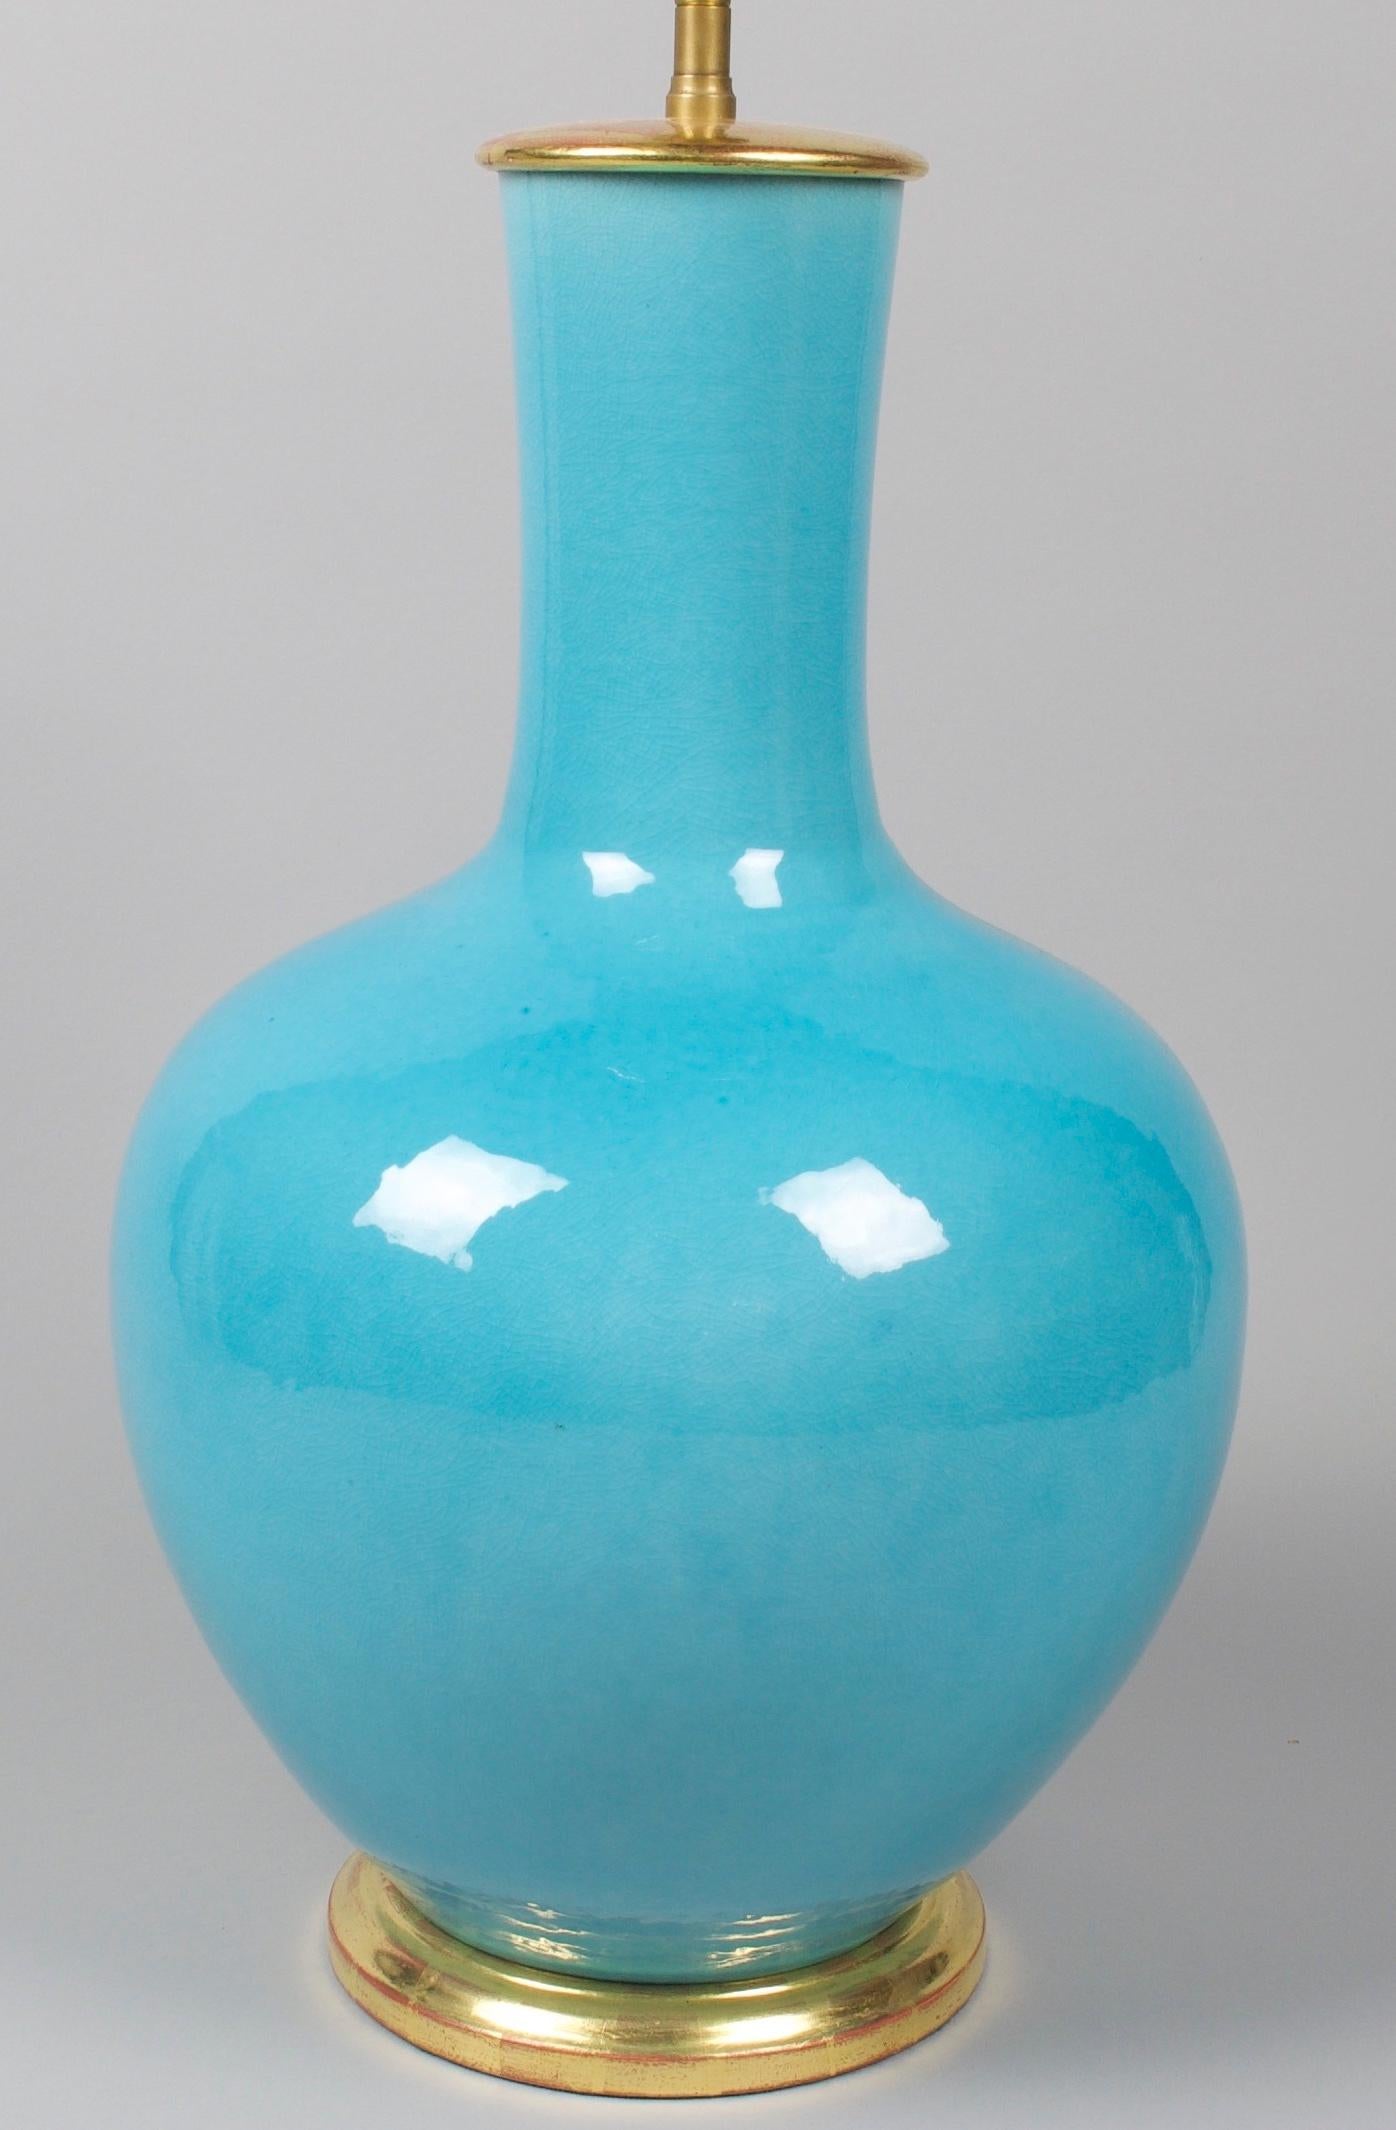 Prächtige türkisblaue Porzellanvase mit geradem Hals, jetzt als Tischlampe montiert, mit handvergoldetem, gedrehtem Sockel.

Höhe der Vase: 17 1/2 Zoll (44,5 cm) einschließlich des Sockels, aber ohne Elektroinstallation und Lampenschirm.

Alle